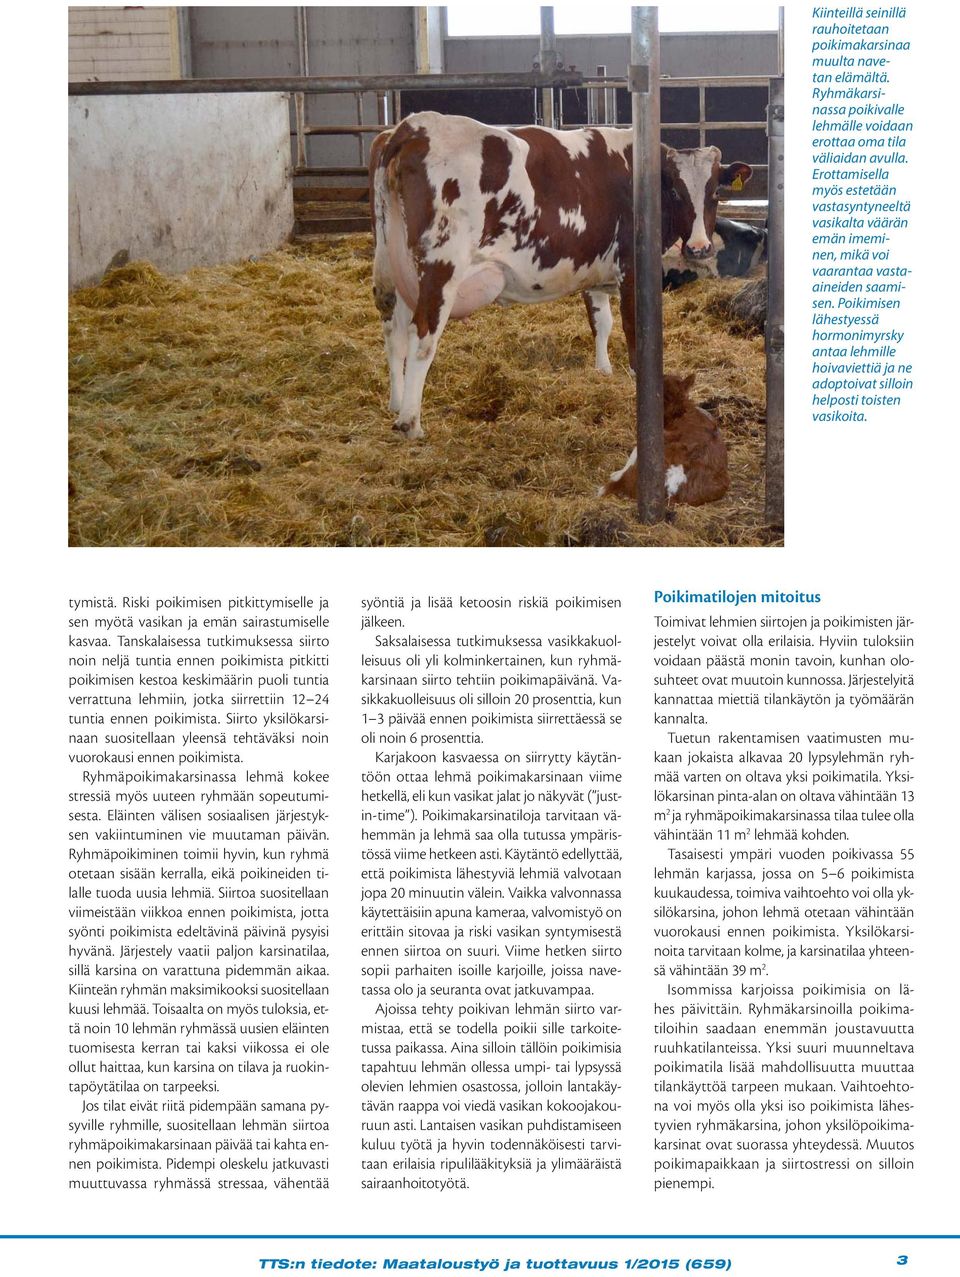 Poikimisen lähestyessä hormonimyrsky antaa lehmille hoivaviettiä ja ne adoptoivat silloin helposti toisten vasikoita. tymistä.